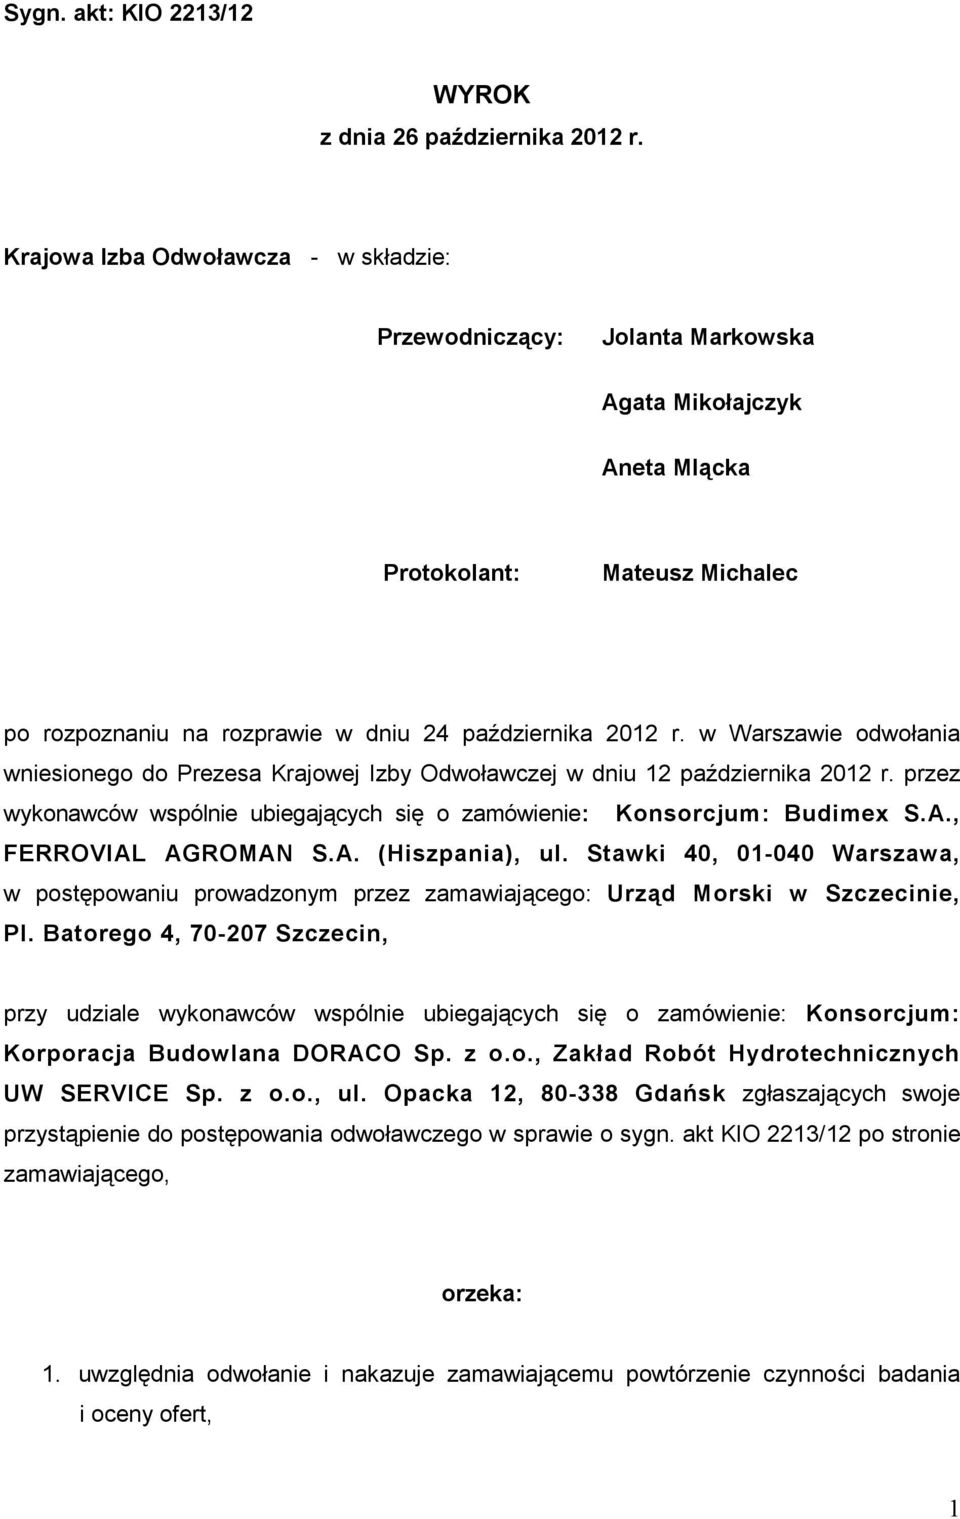 w Warszawie odwołania wniesionego do Prezesa Krajowej Izby Odwoławczej w dniu 12 października 2012 r. przez wykonawców wspólnie ubiegających się o zamówienie: Konsorcjum: Budimex S.A.